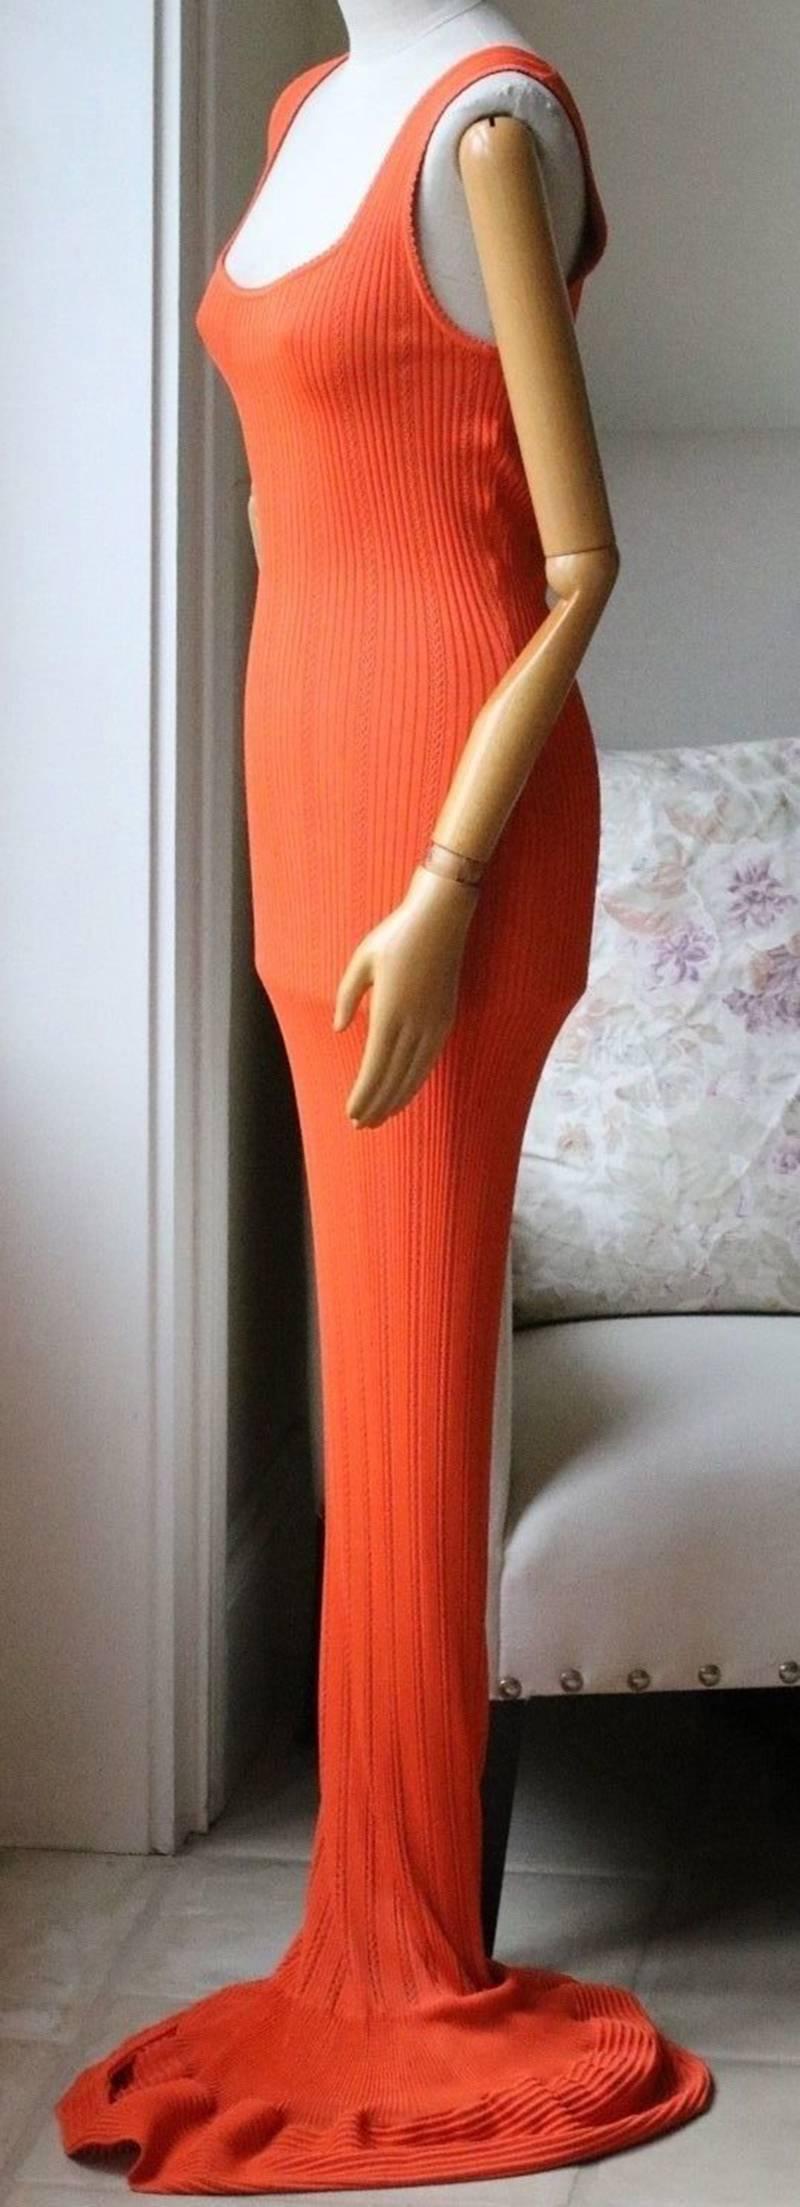 Red Azzedine Alaia 1990's Orange Knit Maxi Dress